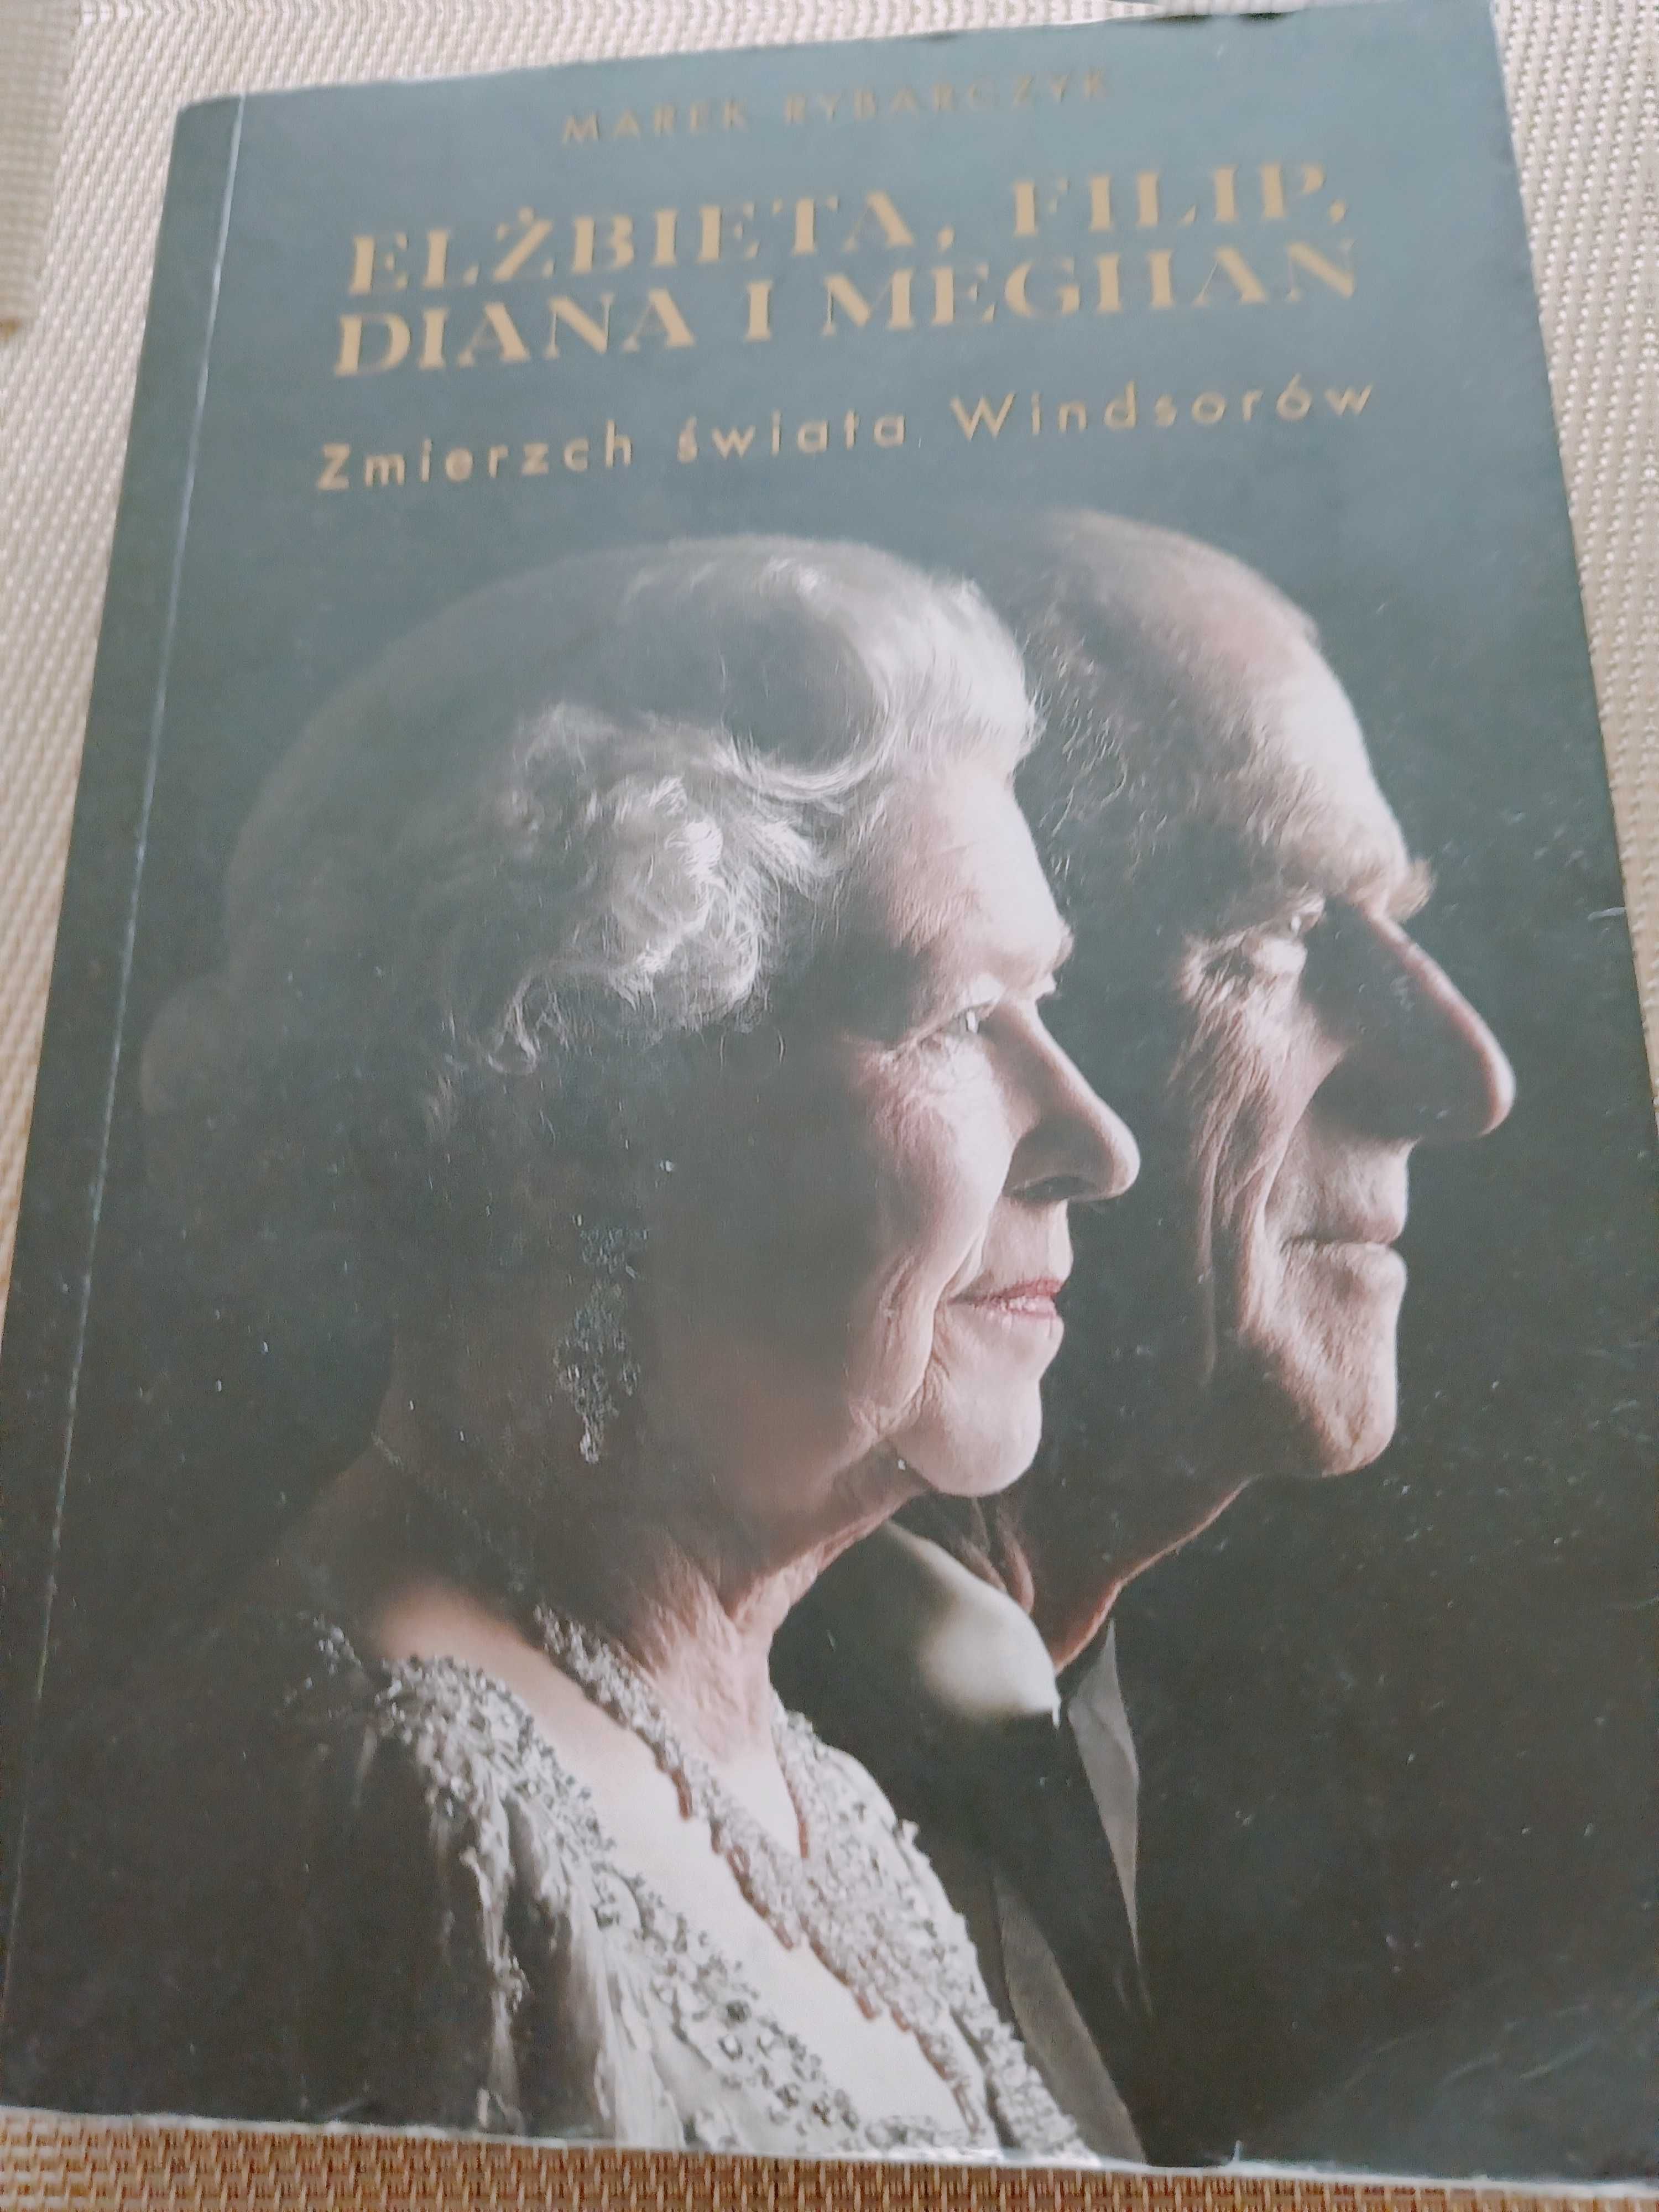 MarekRybarczyk Elżbieta Filip Diana i Meghan Zmierzch Świata Windsorów